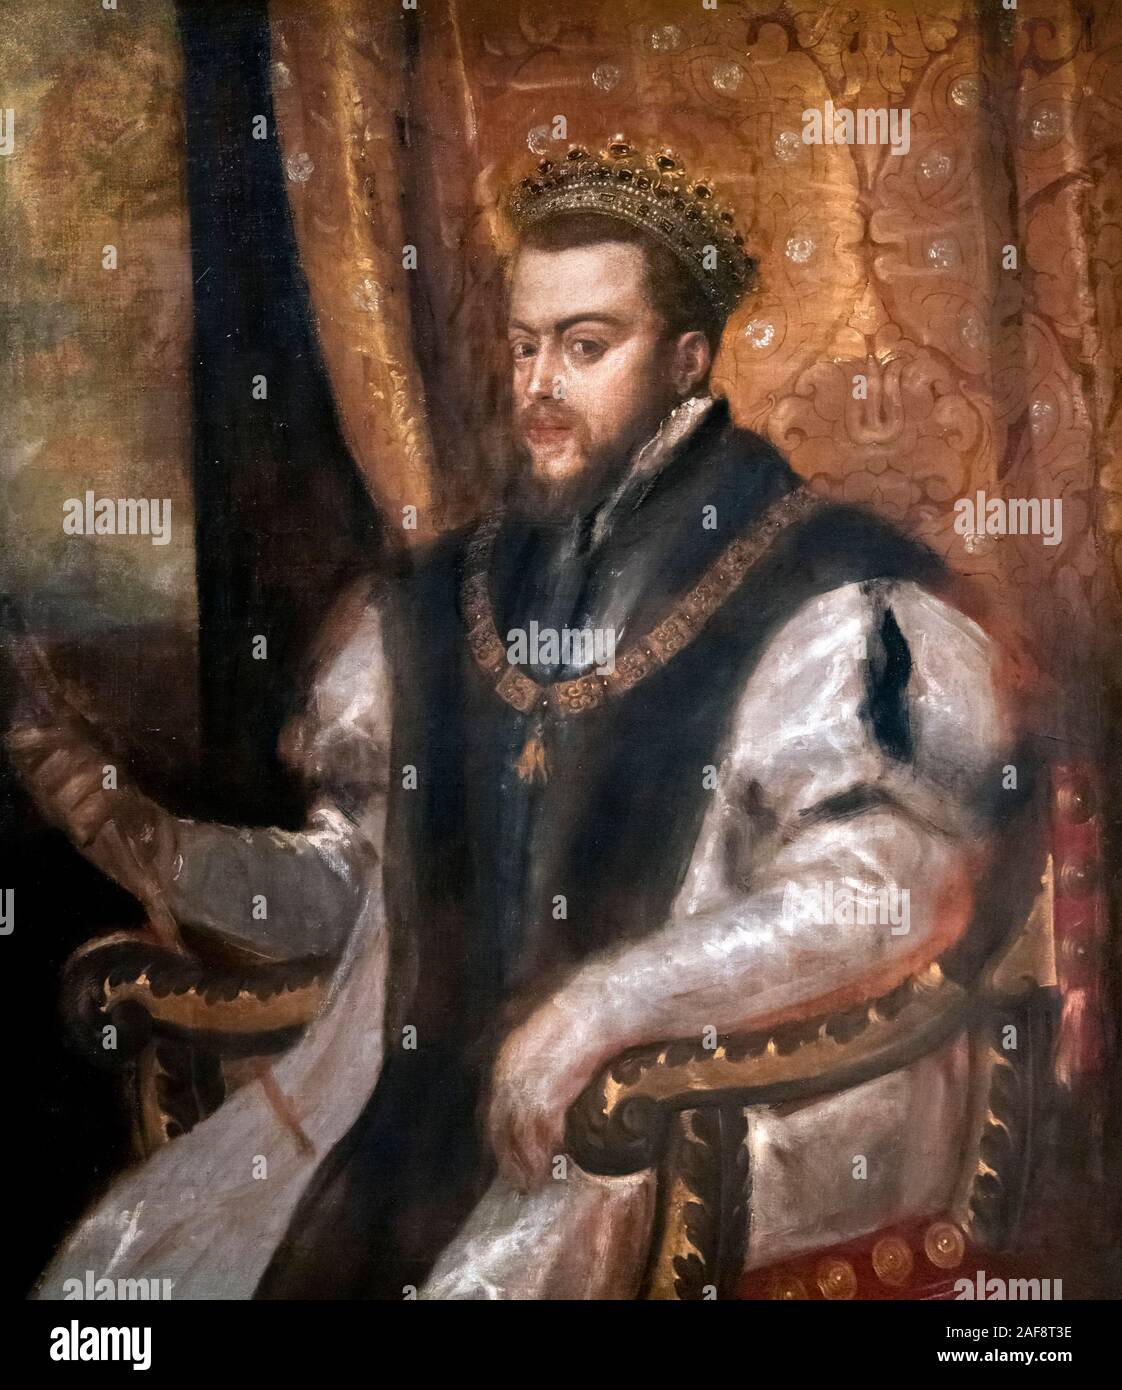 Le roi Philippe II d'Espagne (1527-1598) par Titien, huile sur toile, c.1555 Banque D'Images